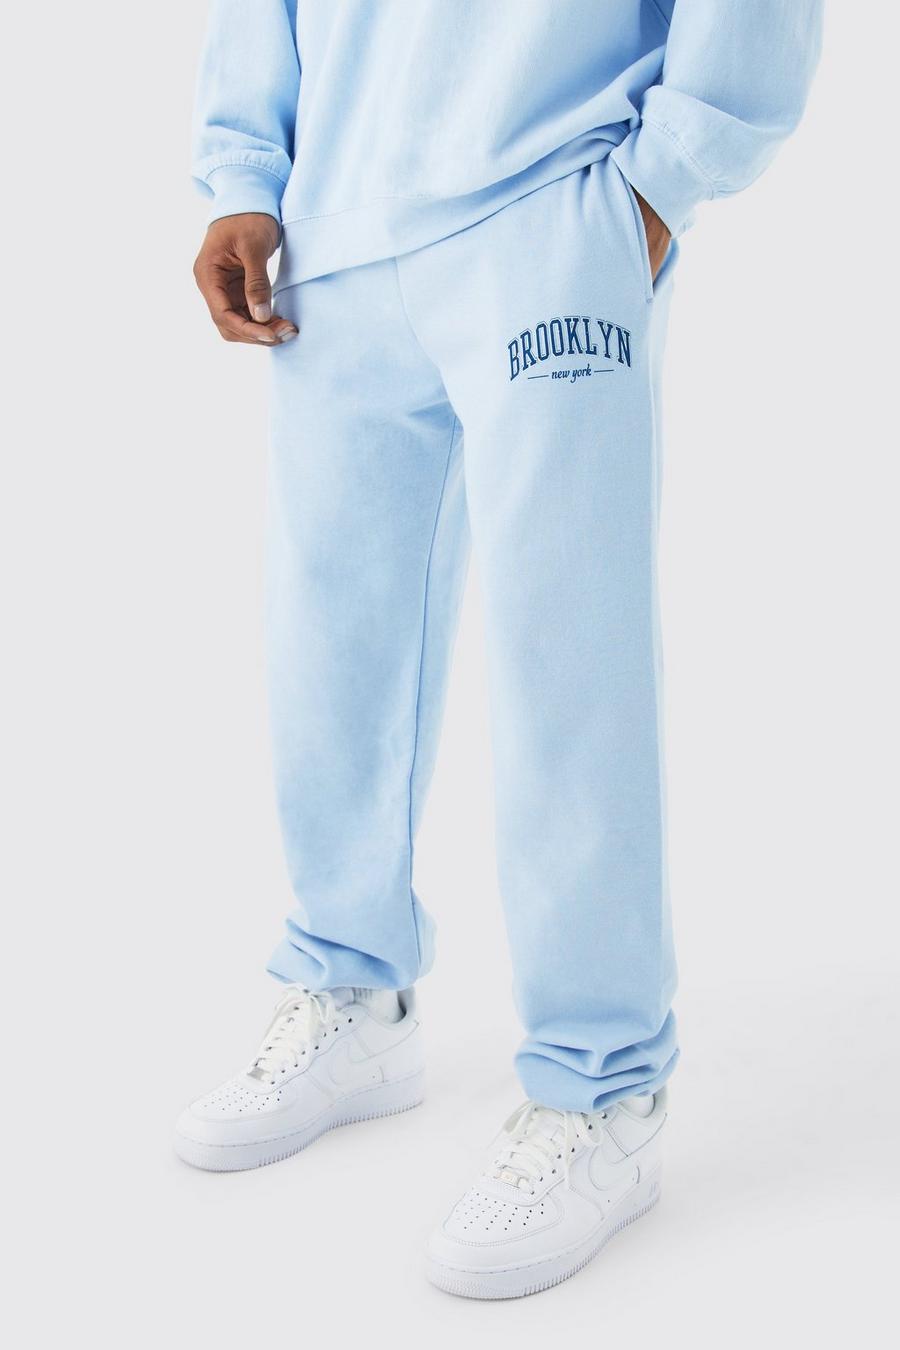 Pantalón deportivo oversize con estampado de Brooklyn NYC, Light blue image number 1